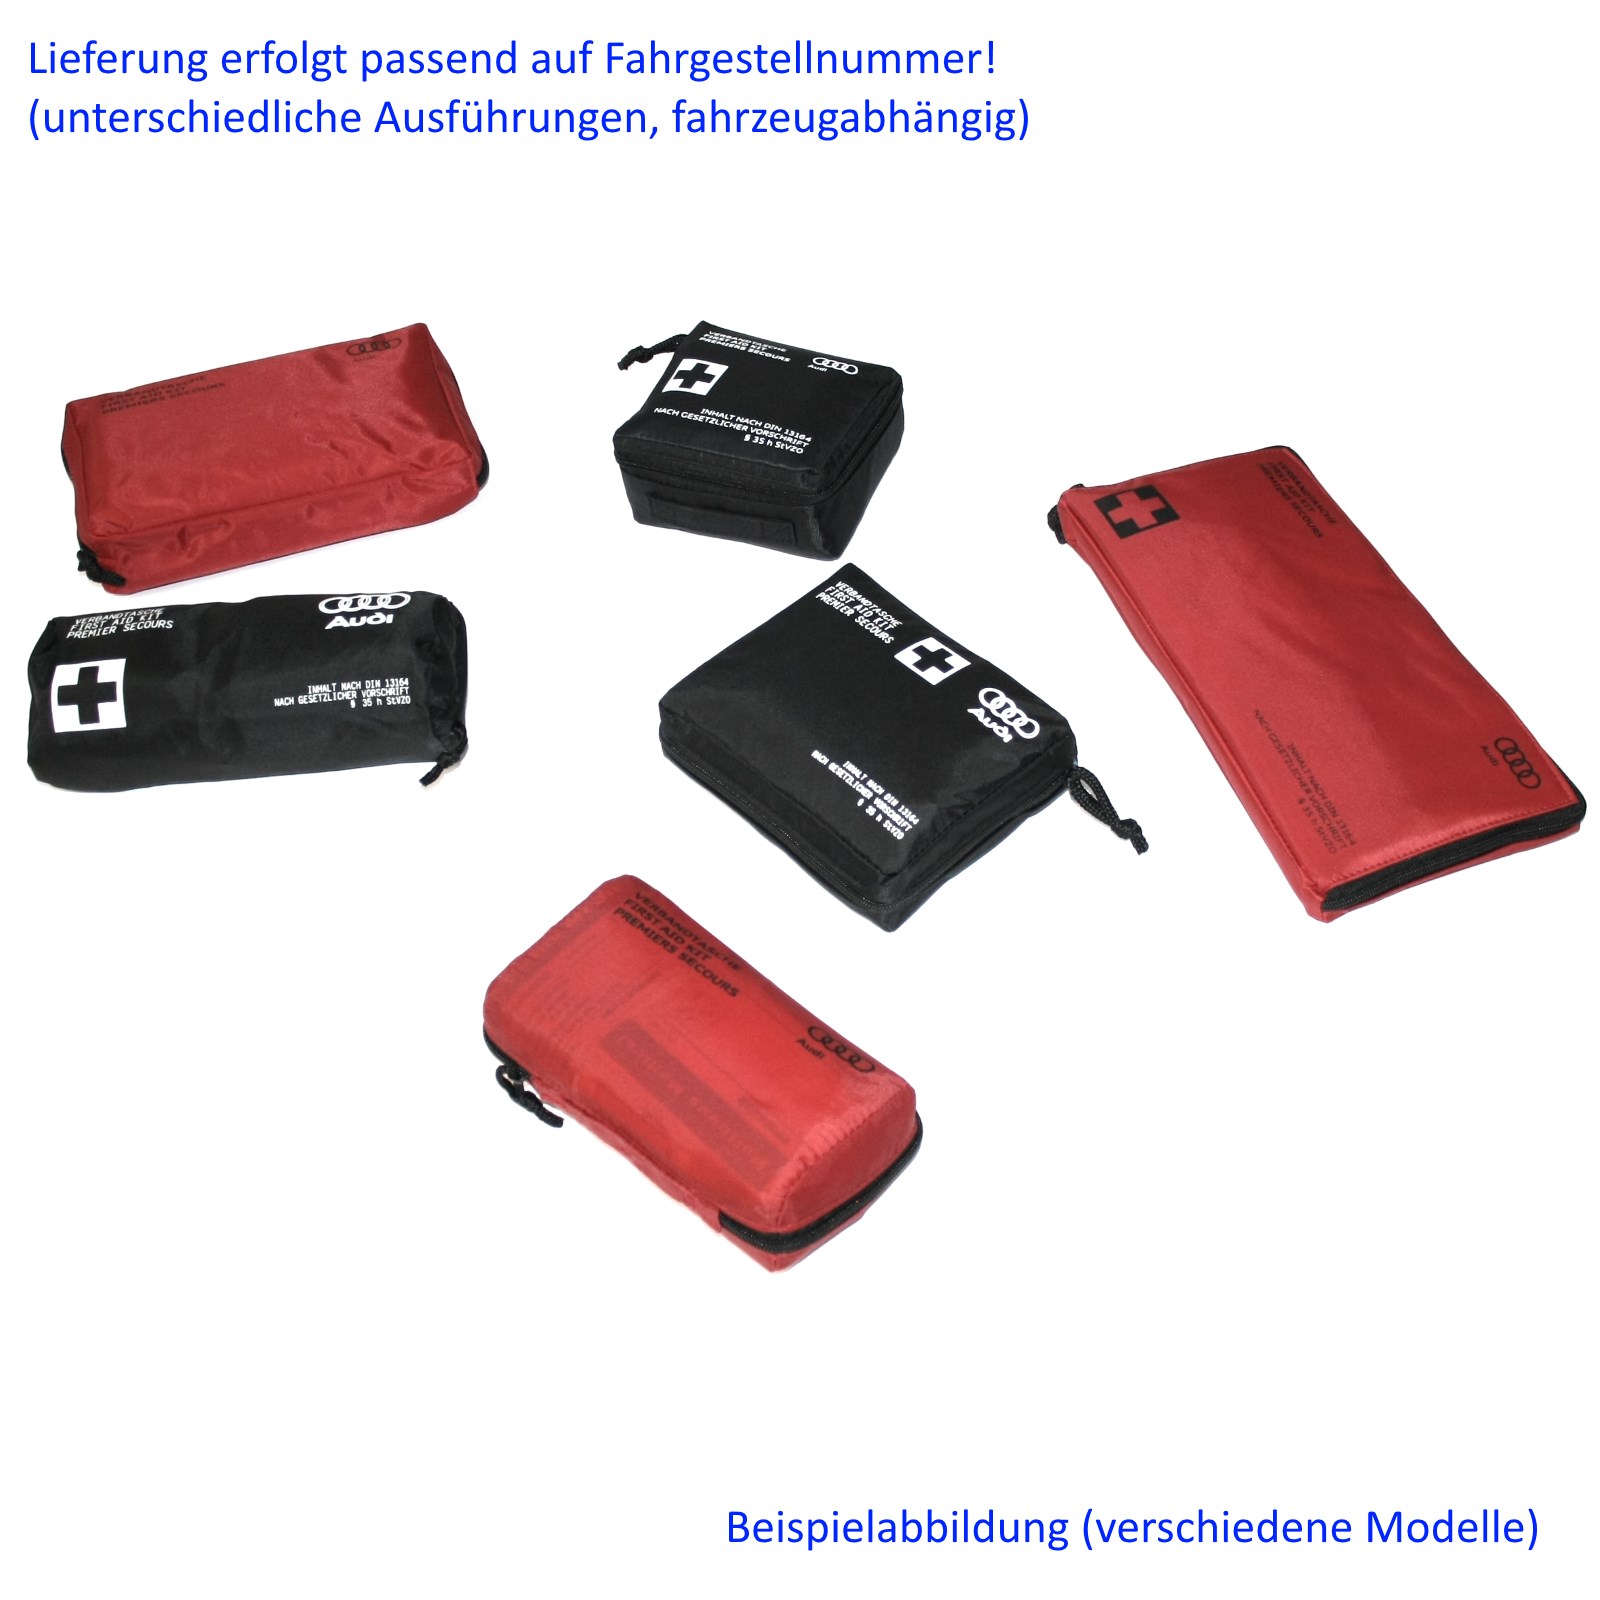 Original Audi Verbandtasche Verbandkasten Sicherheit Erste Hilfe DIN13164  First Aid Kit